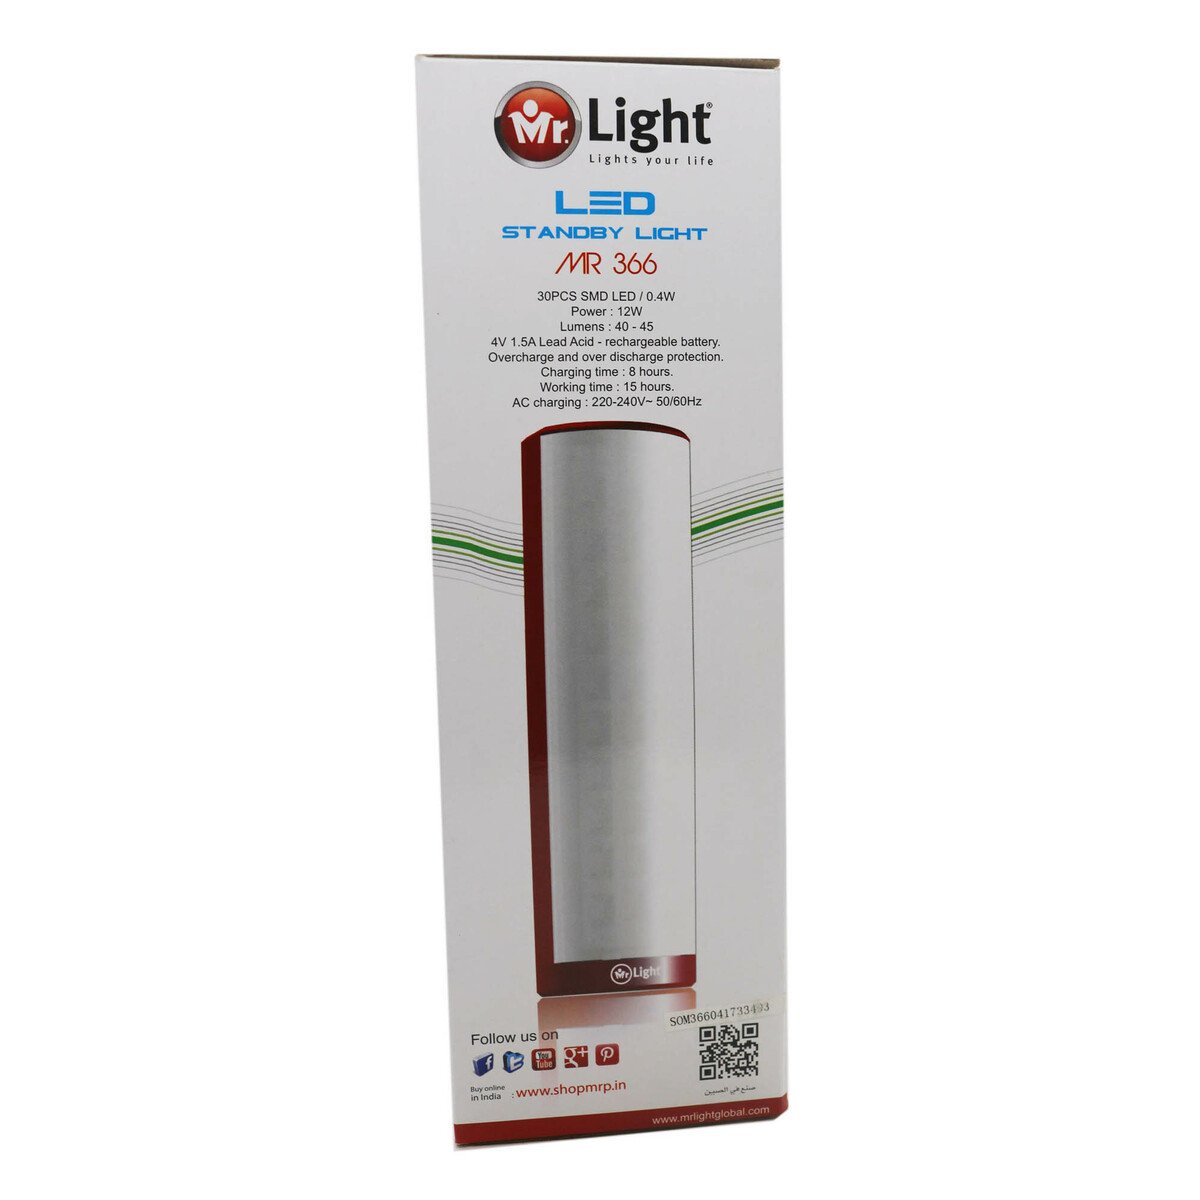 Mr Light Rechargeable LED Light MR366